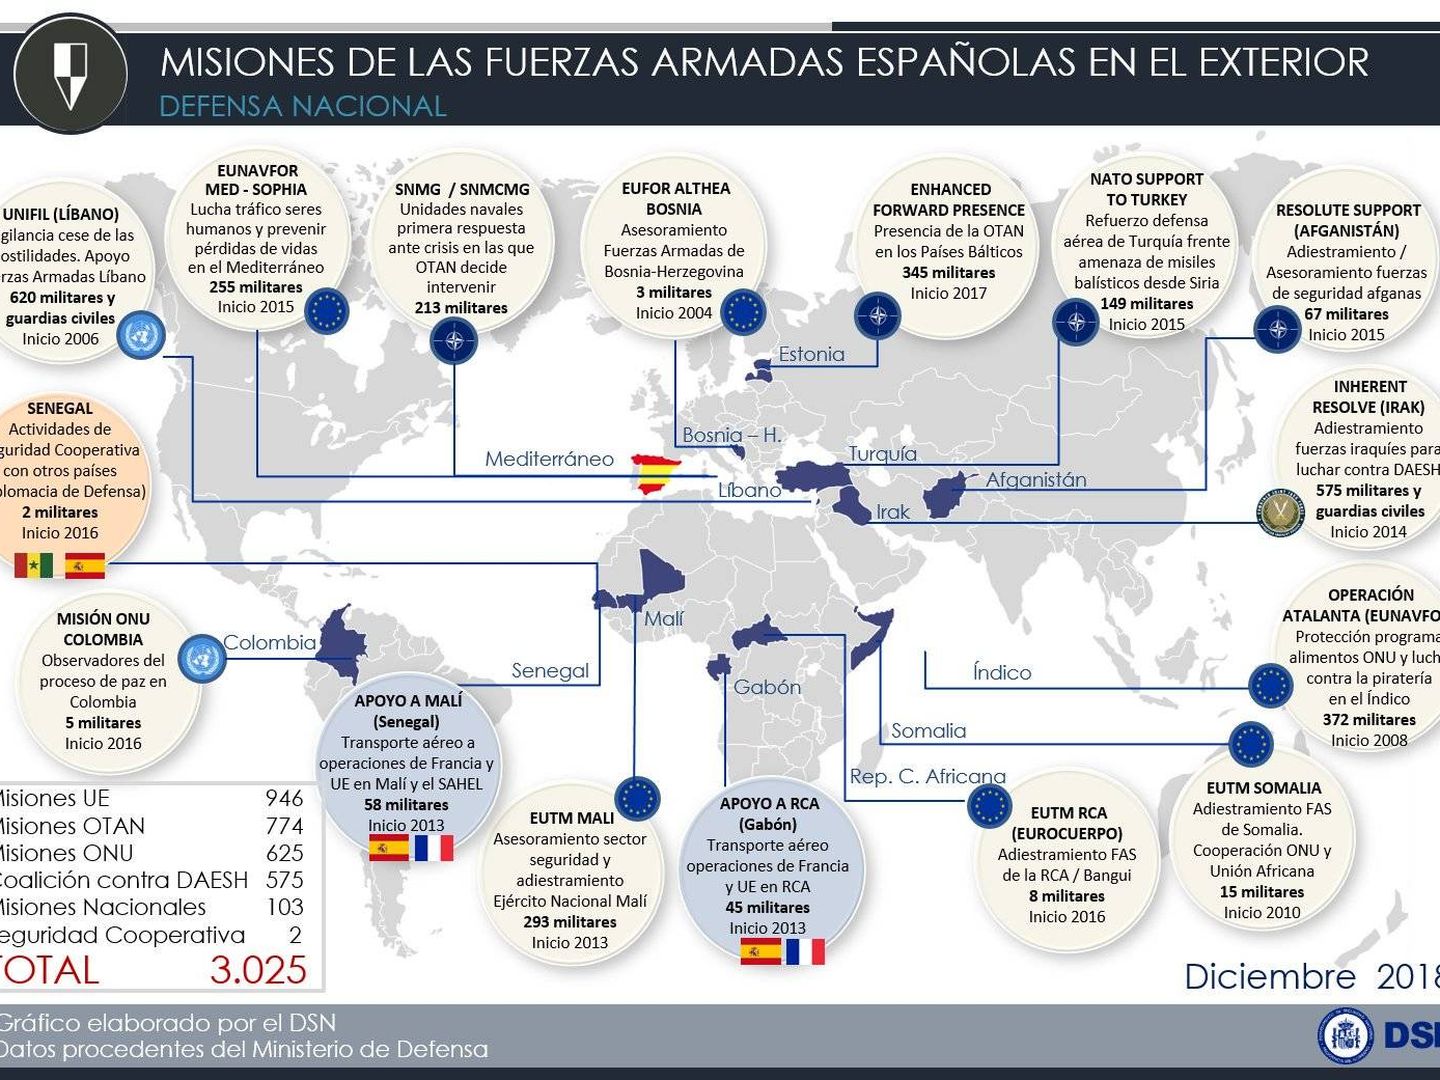 Misiones de las Fuerzas Armadas españolas en el exterior, a diciembre de 2018. (Gobierno de España)